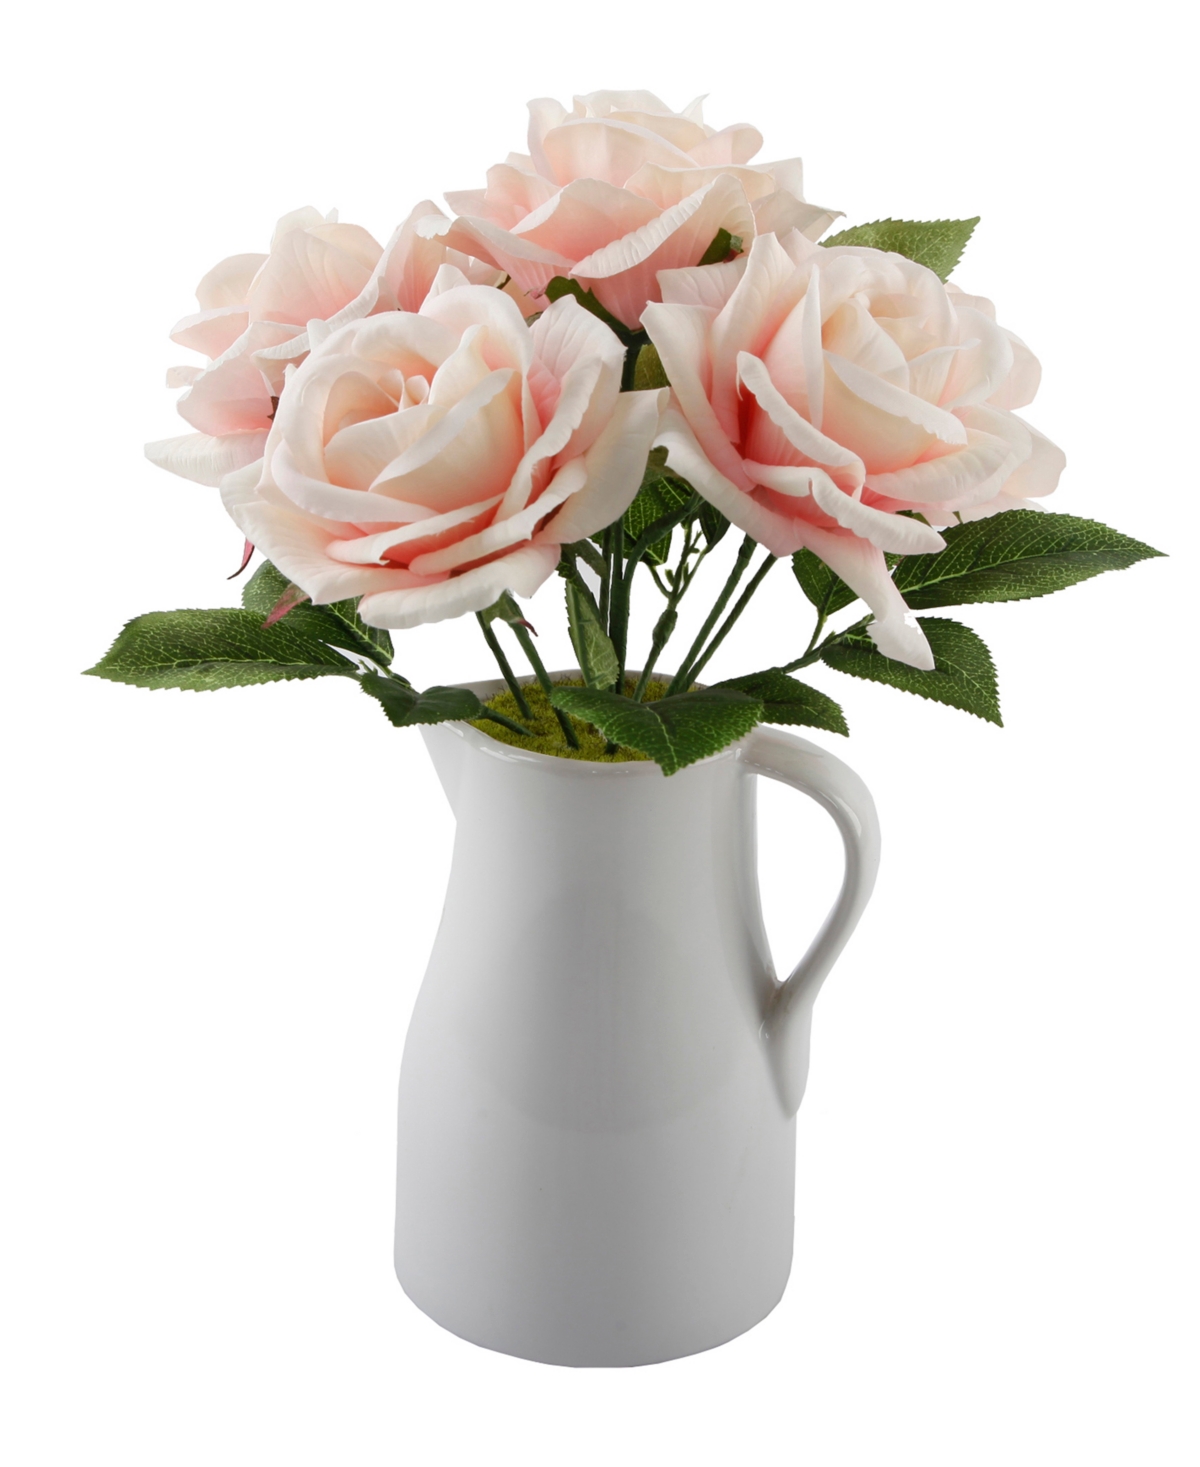 12.5" H Roses in Ceramic Water Pot - Pink